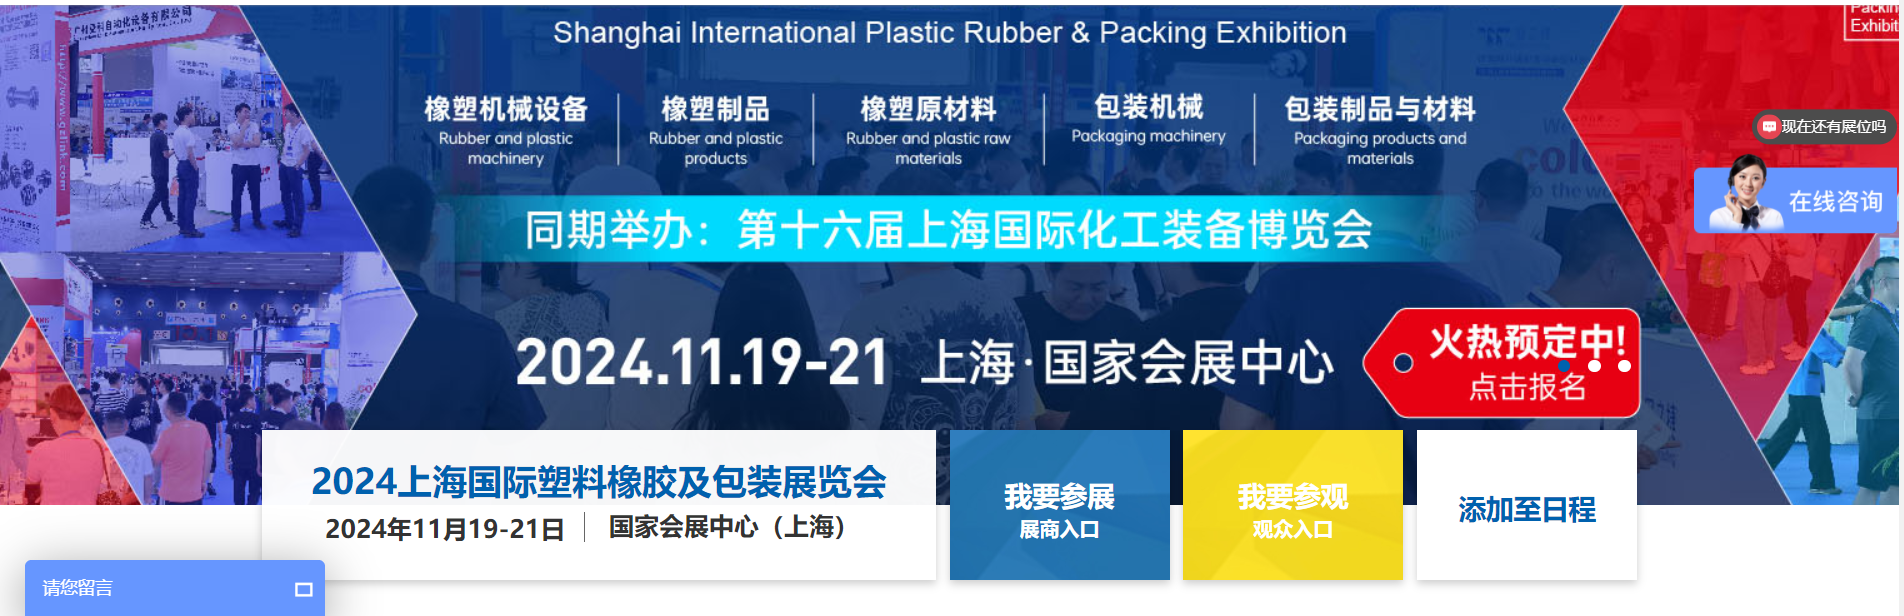 2024上海国际塑料橡胶及包装展览会|「时间+地点+介绍」